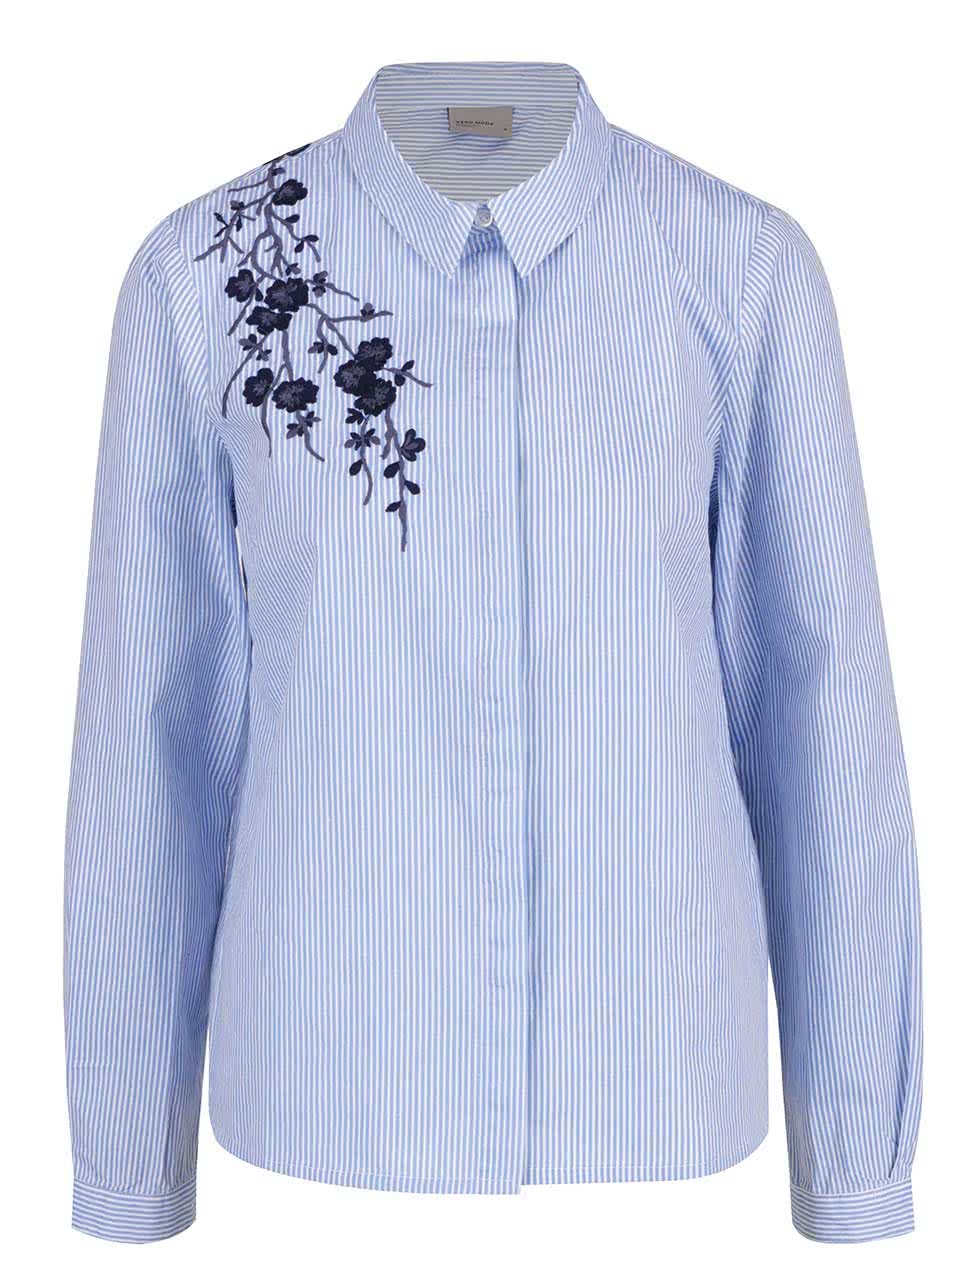 Modrá pruhovaná košile s výšivkou Vero Moda Oda